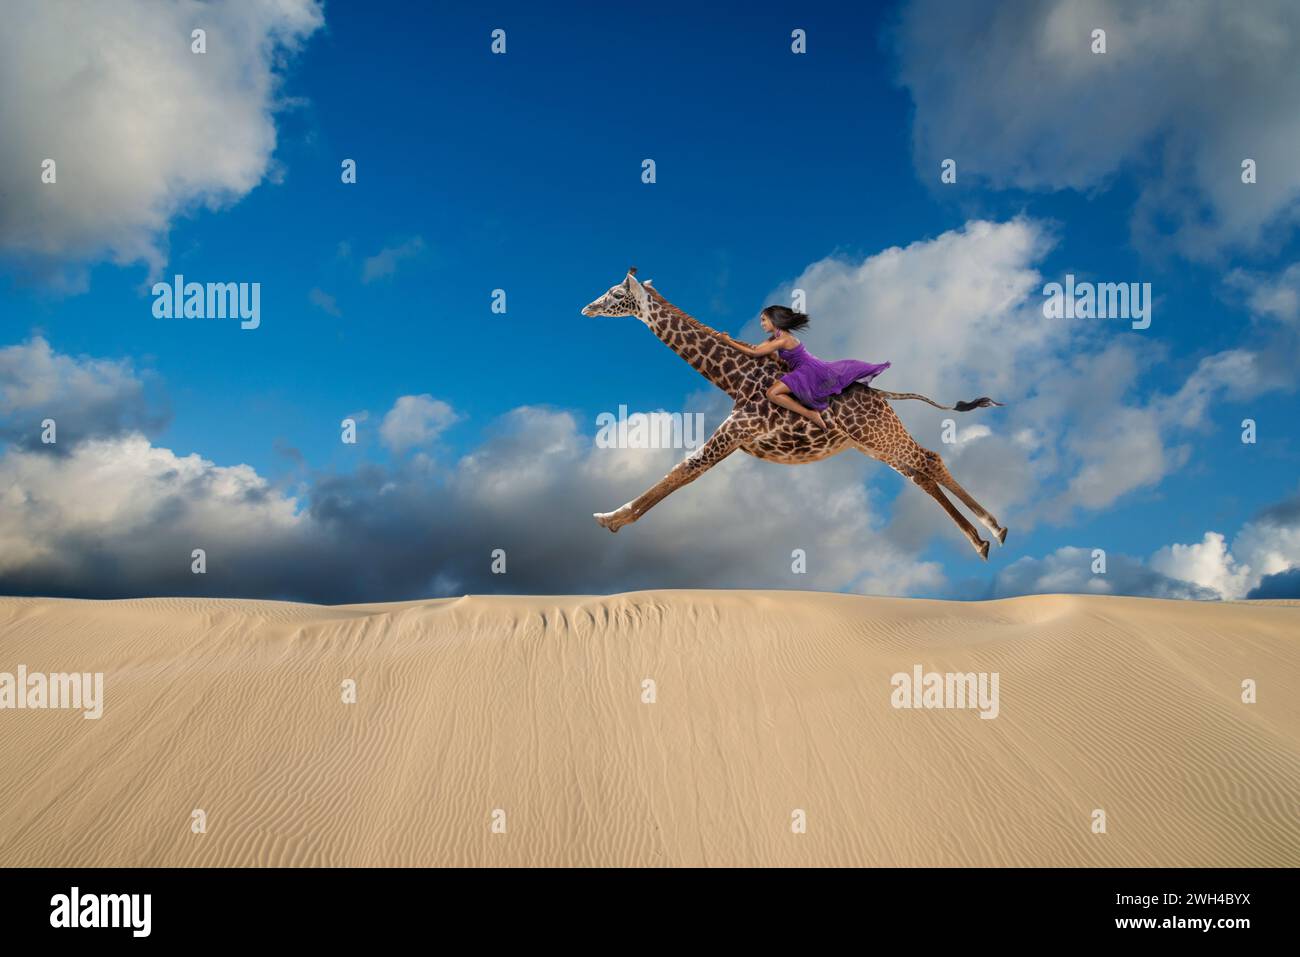 Une femme forte galope sur une girafe à travers une dune de sable dans une image d'audace, de courage, de liberté et d'inattendu. Banque D'Images